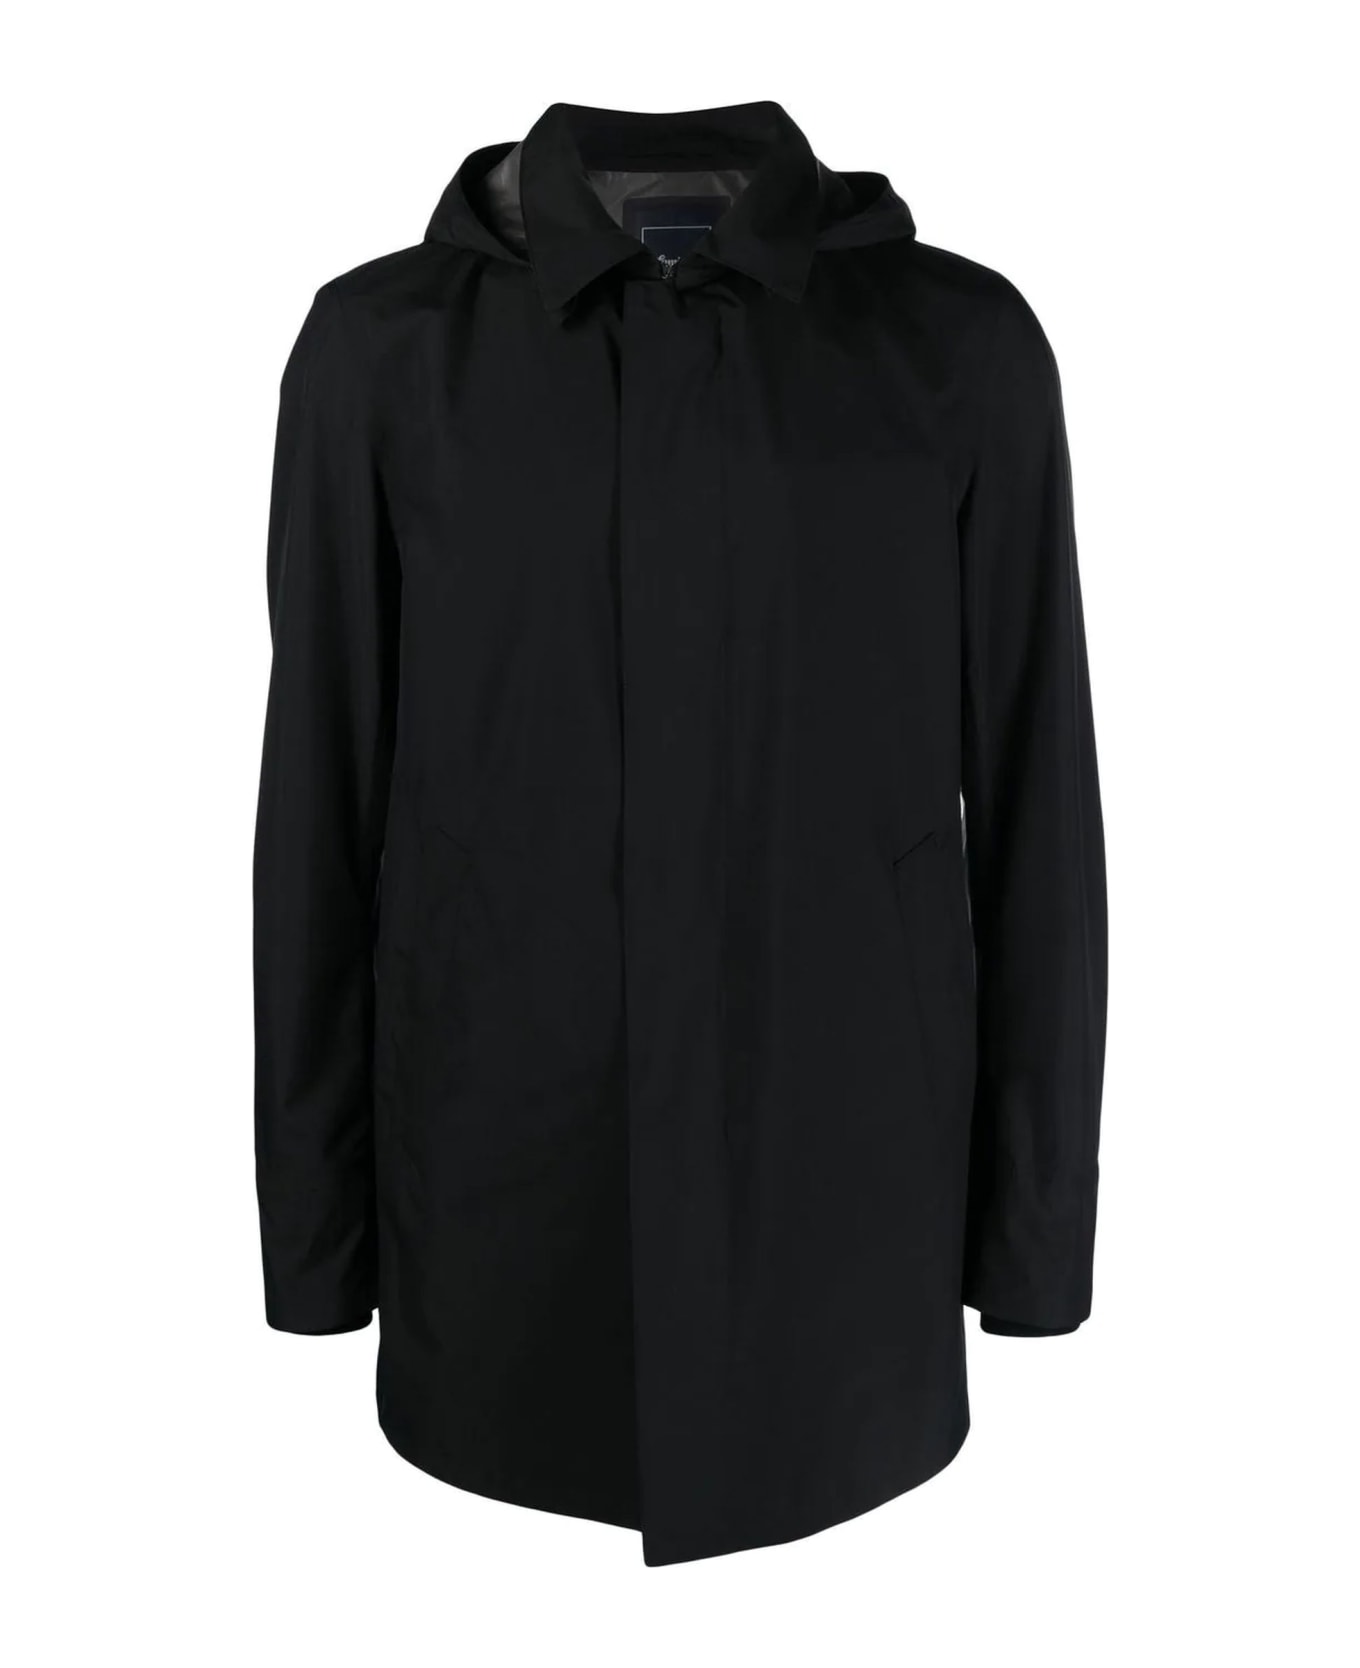 Herno Black Hooded Waterproof Raincoat - Black